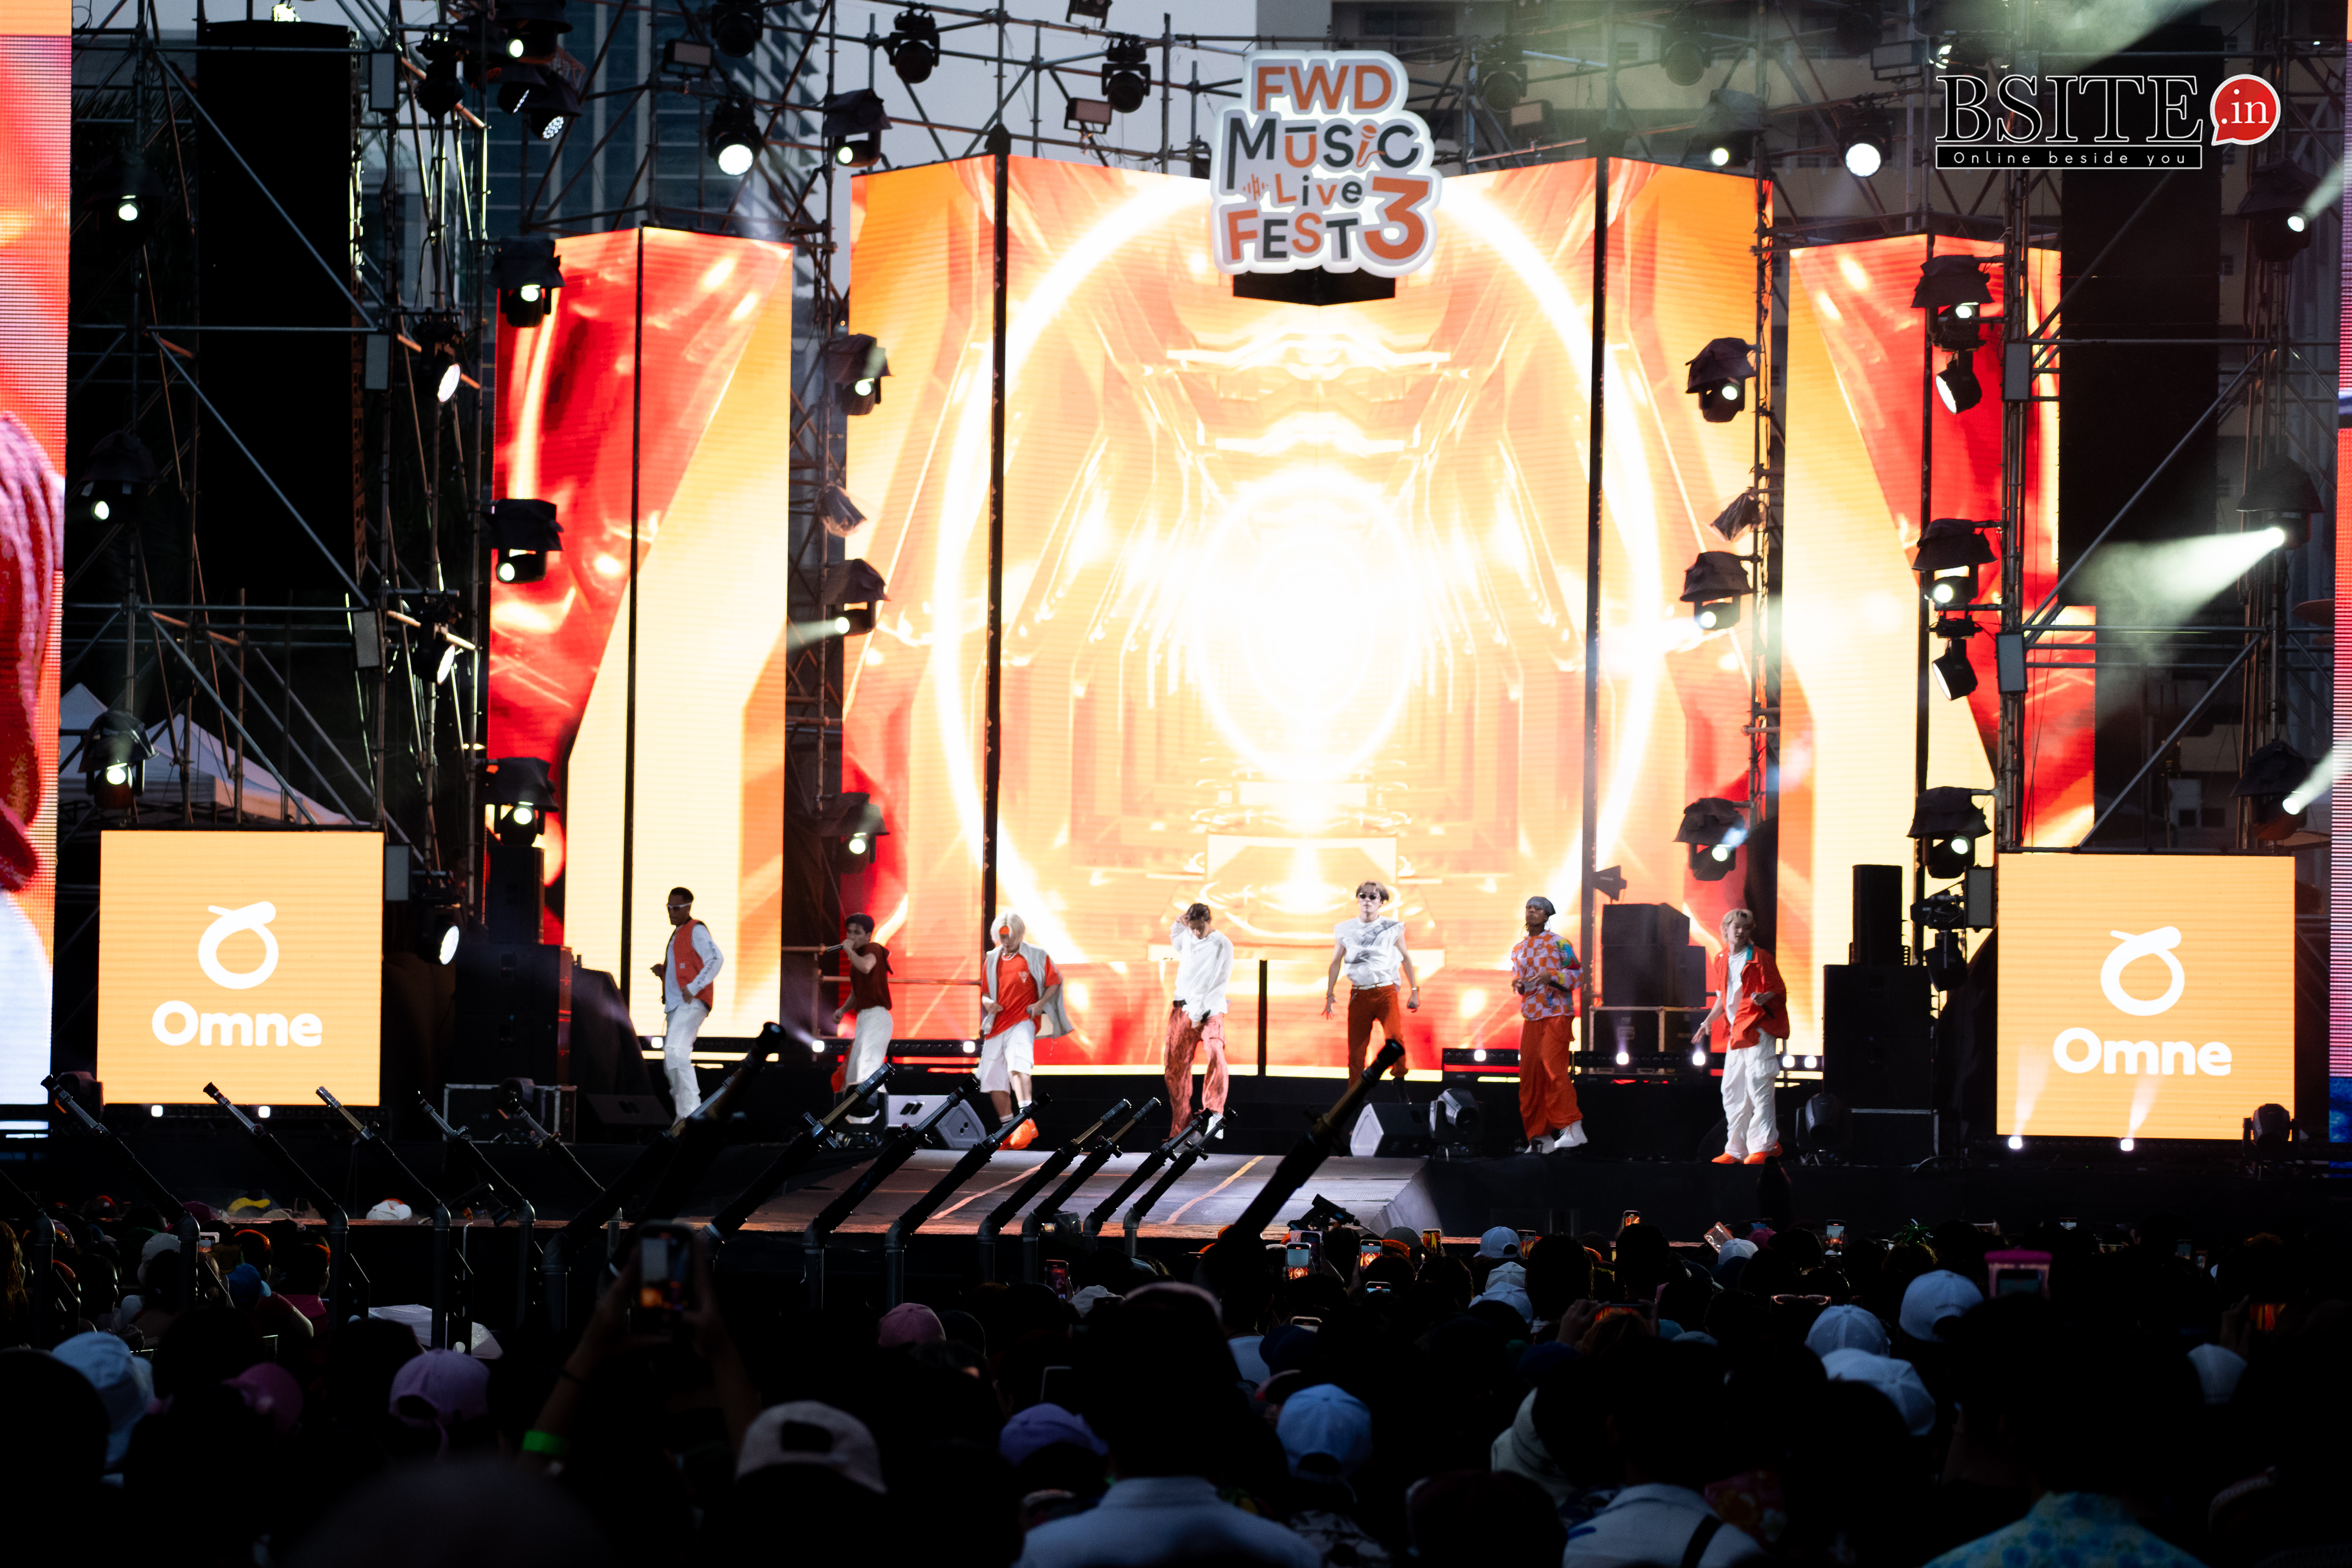 ศิลปินวัยรุ่นตัวท็อป ตบเท้าร่วมงาน ! ฟรีคอนเสิร์ตใหญ่เล่นน้ำกลางเมือง “FWD Music Live Fest 3 #TimeToPlaySongkran”